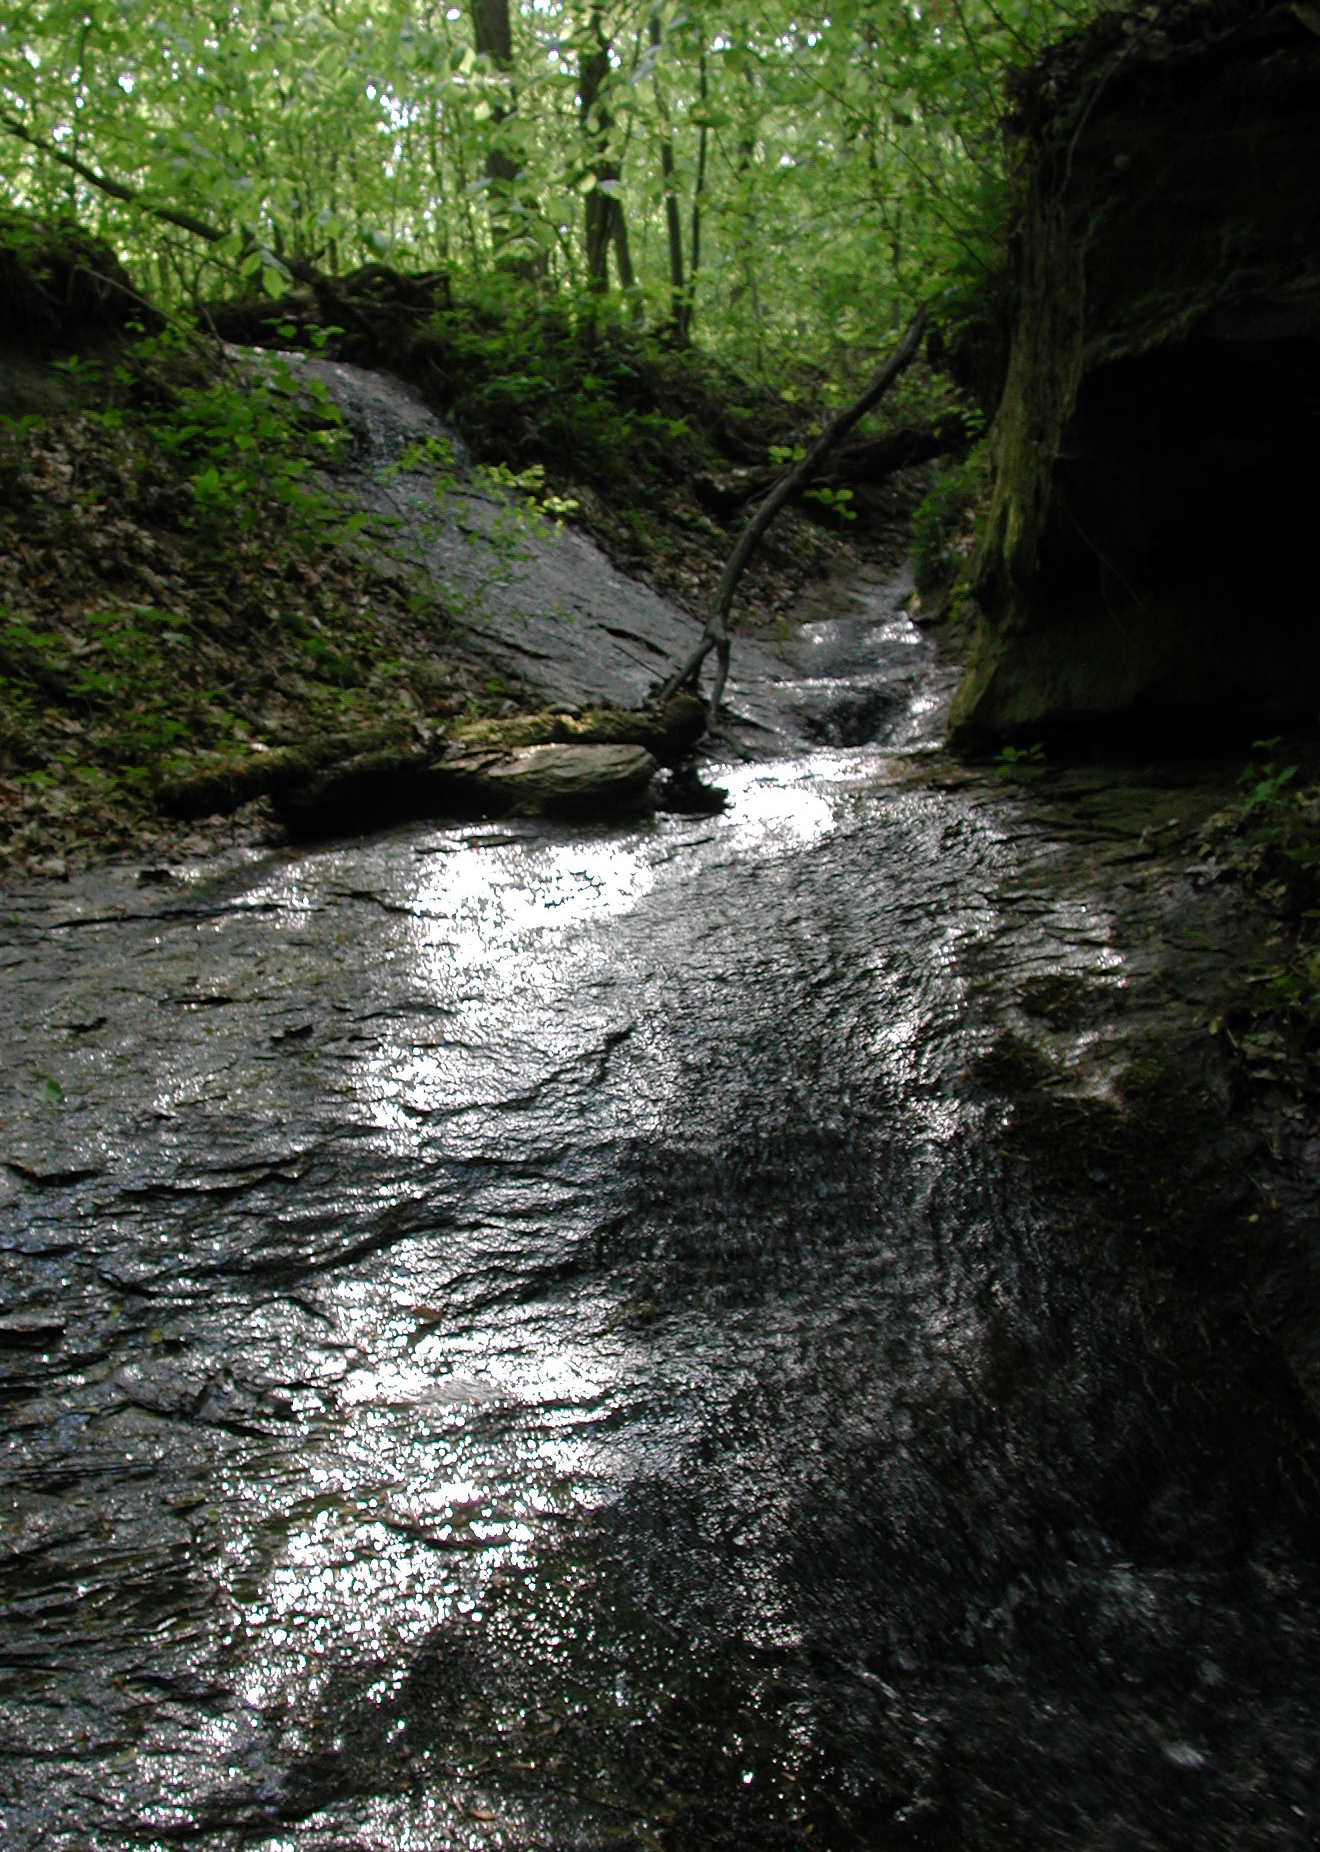 Sluice in Streamway Formed by Bedrock